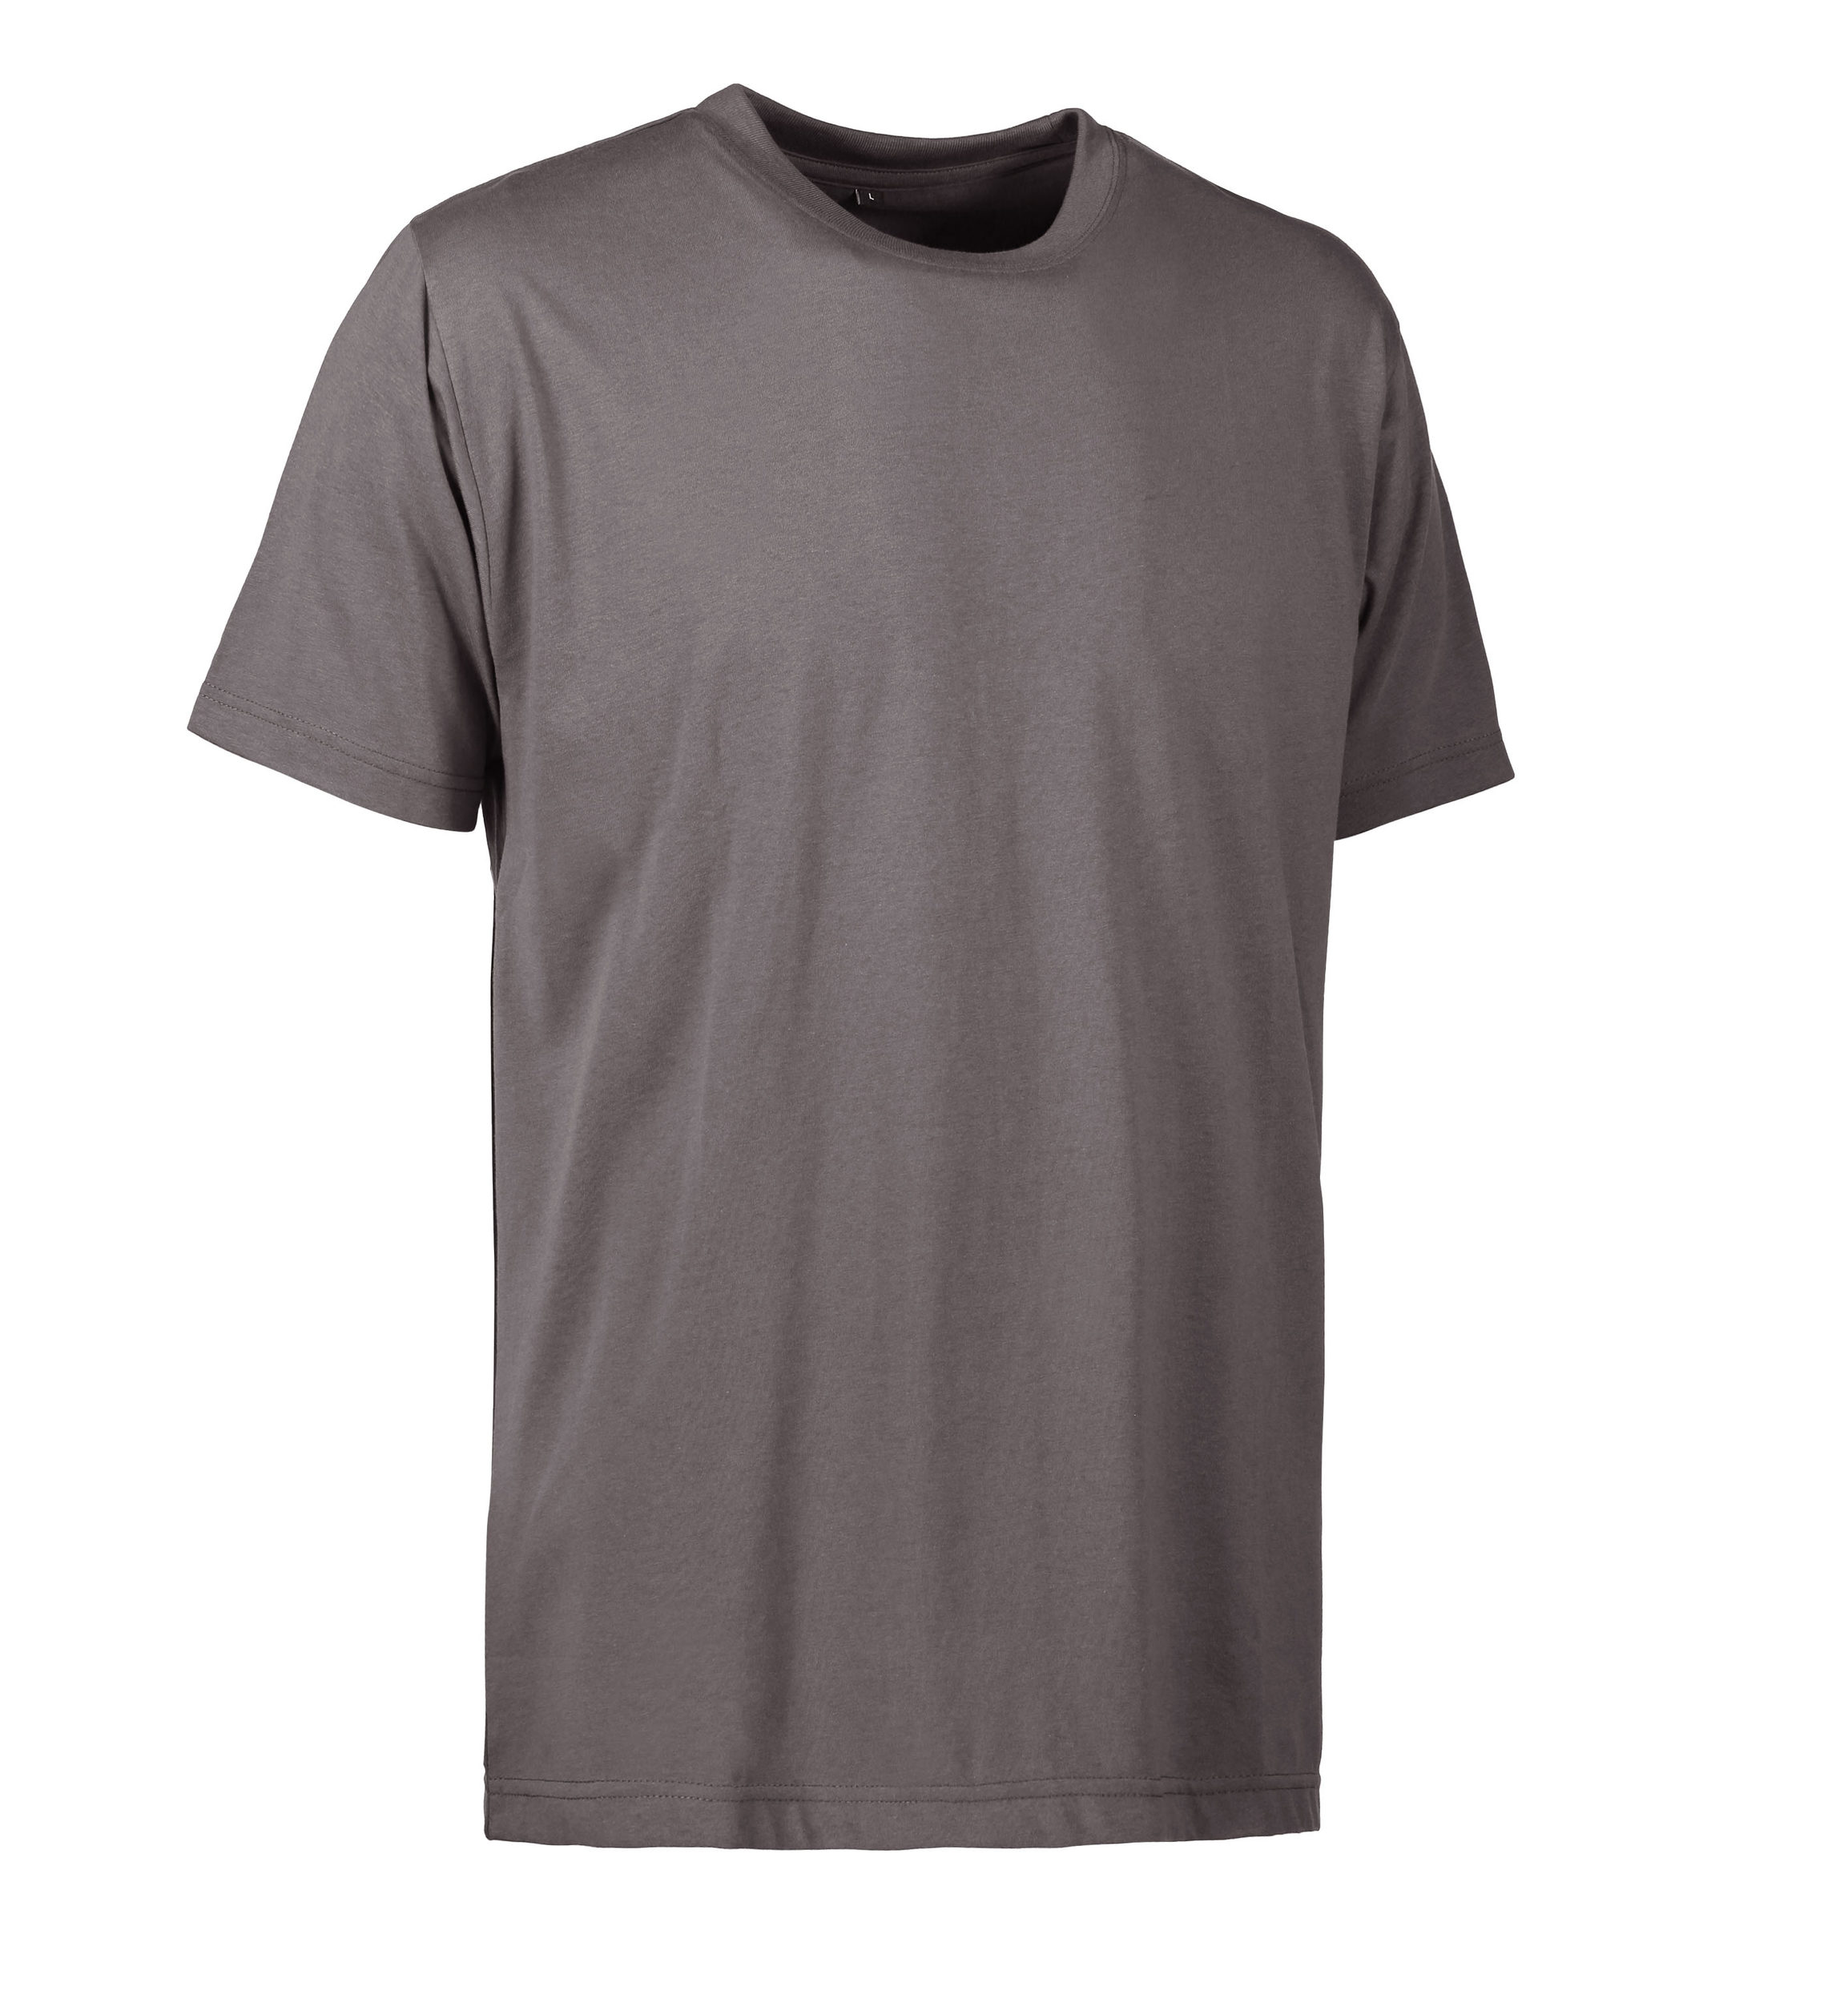 Se Slidstærk t-shirt i mørkegrå til mænd - 3XL hos Sygeplejebutikken.dk